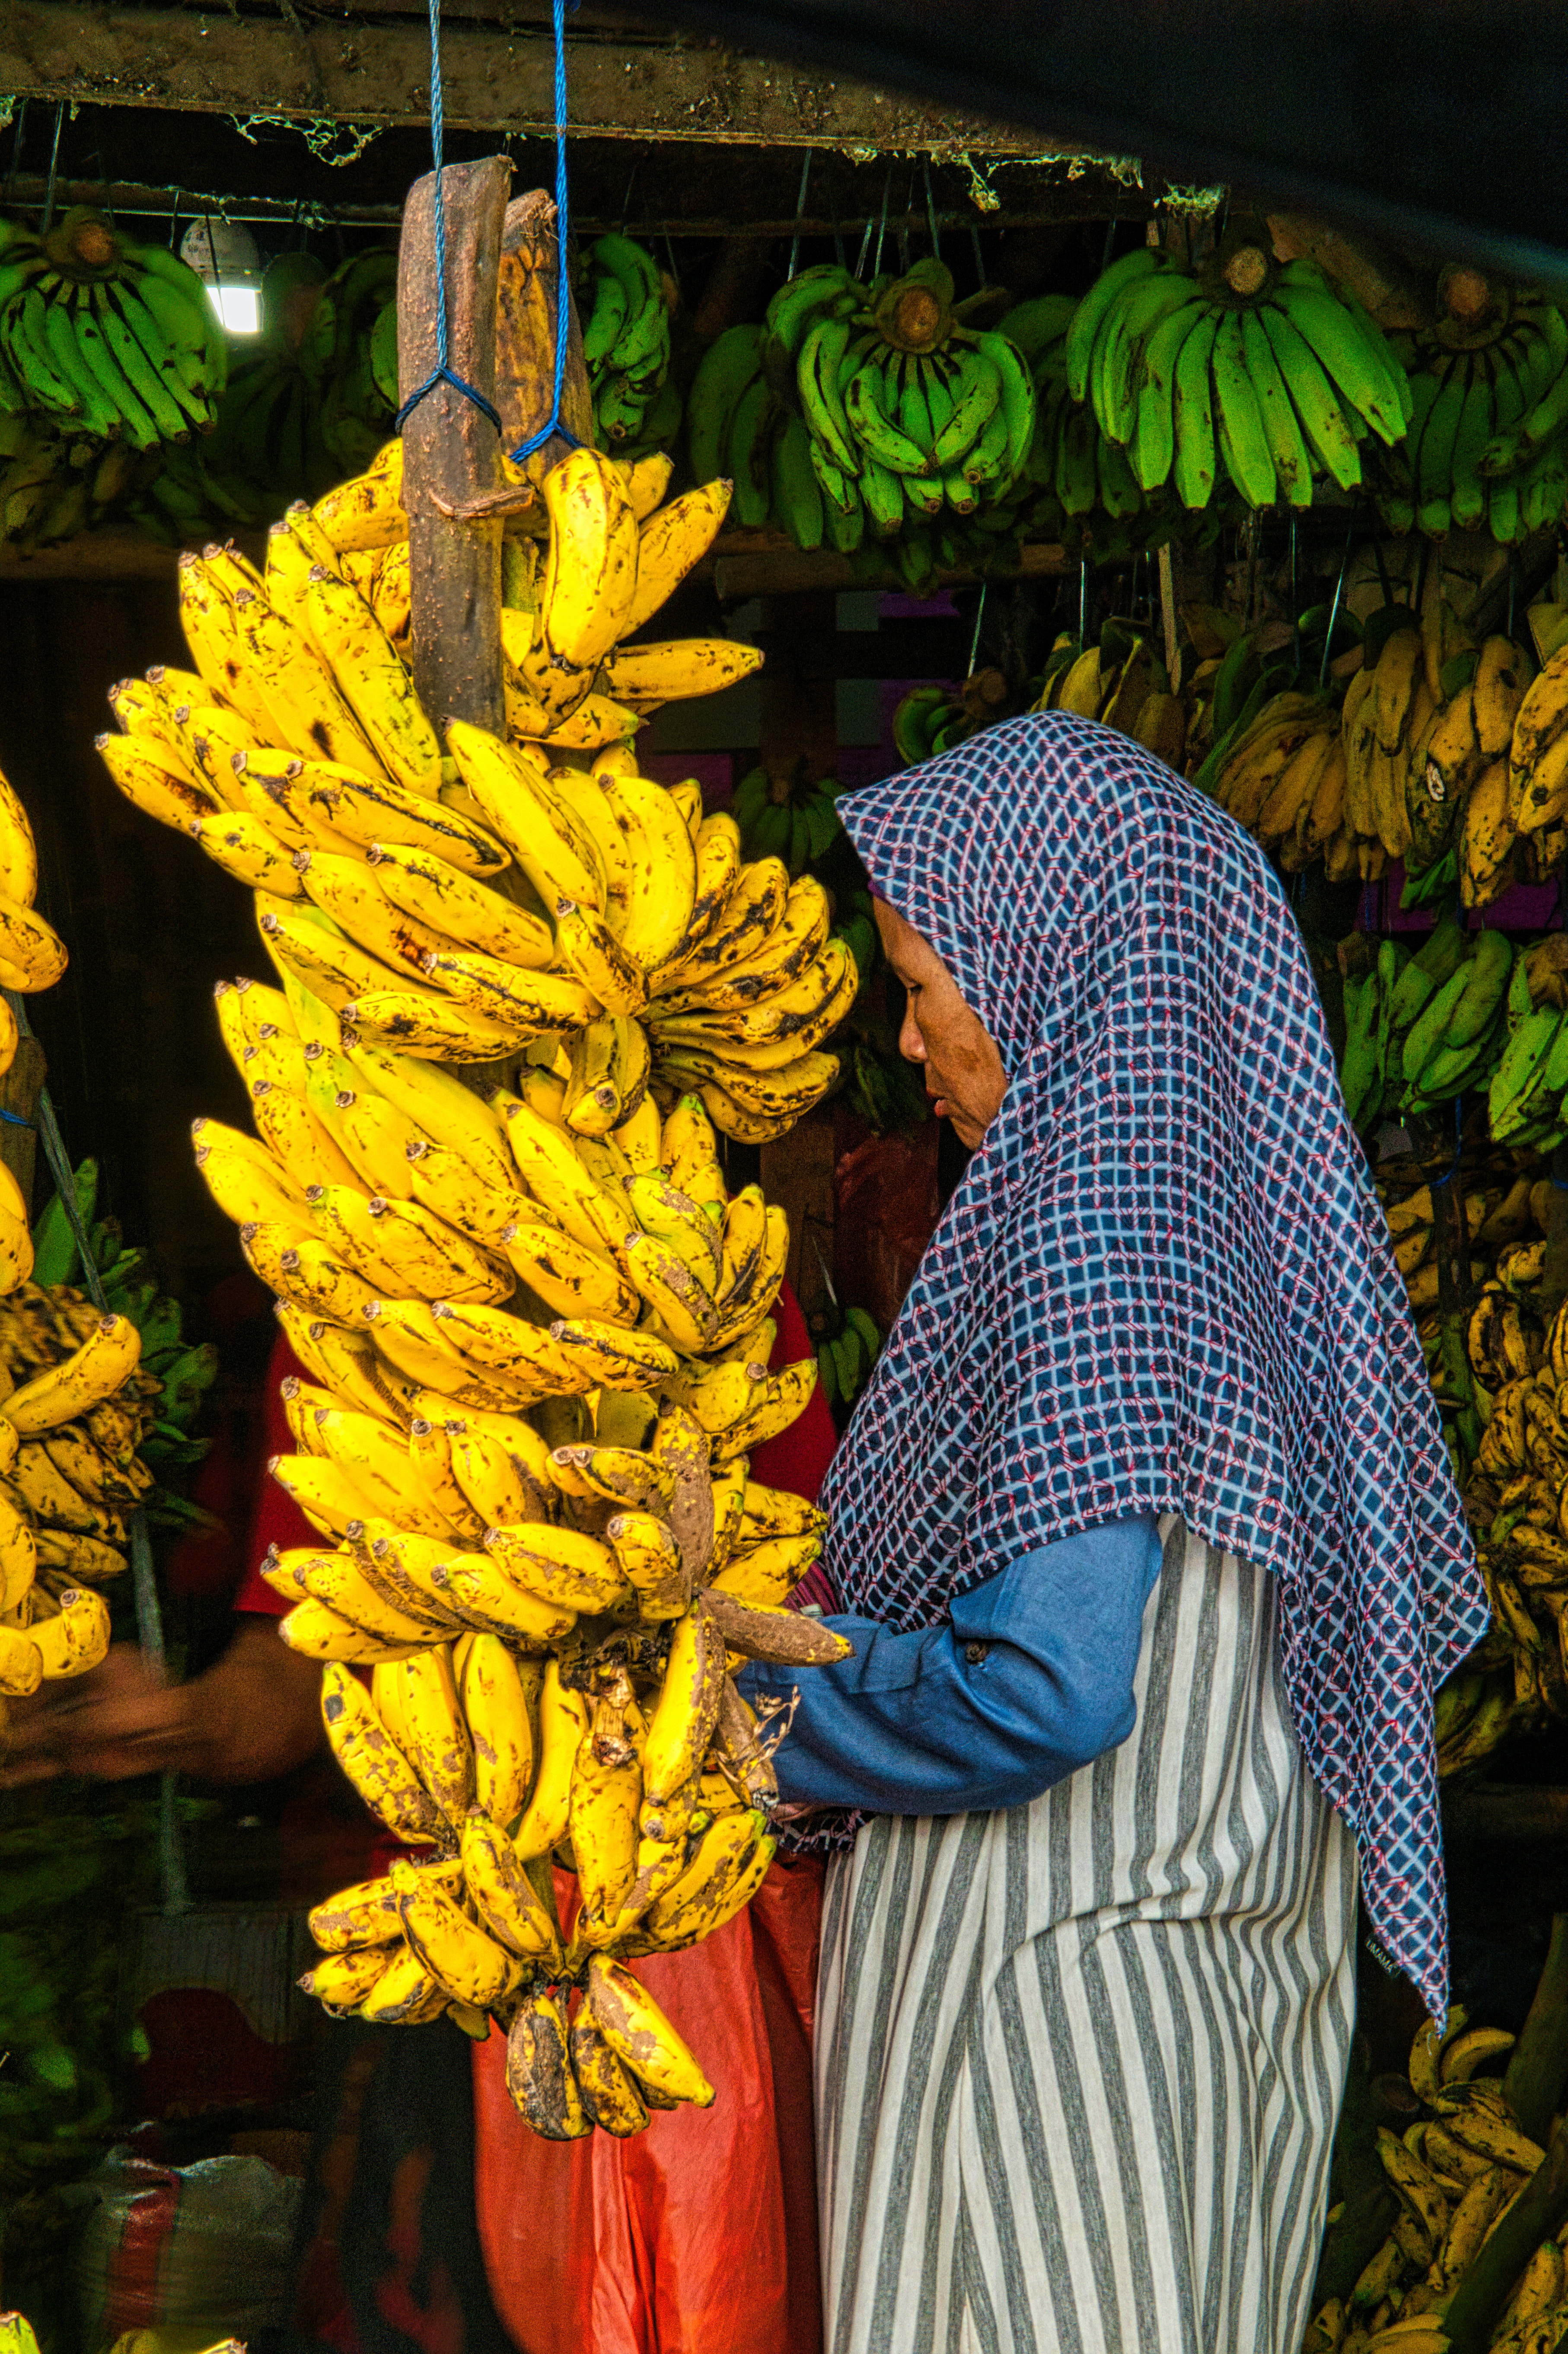 केळीचा उगम आग्नेय आशिया म्हणजे मलेशिया, इंडोनेशिया किंवा फिलीपिन्सच्या जंगलात झाला असे मानले जाते.